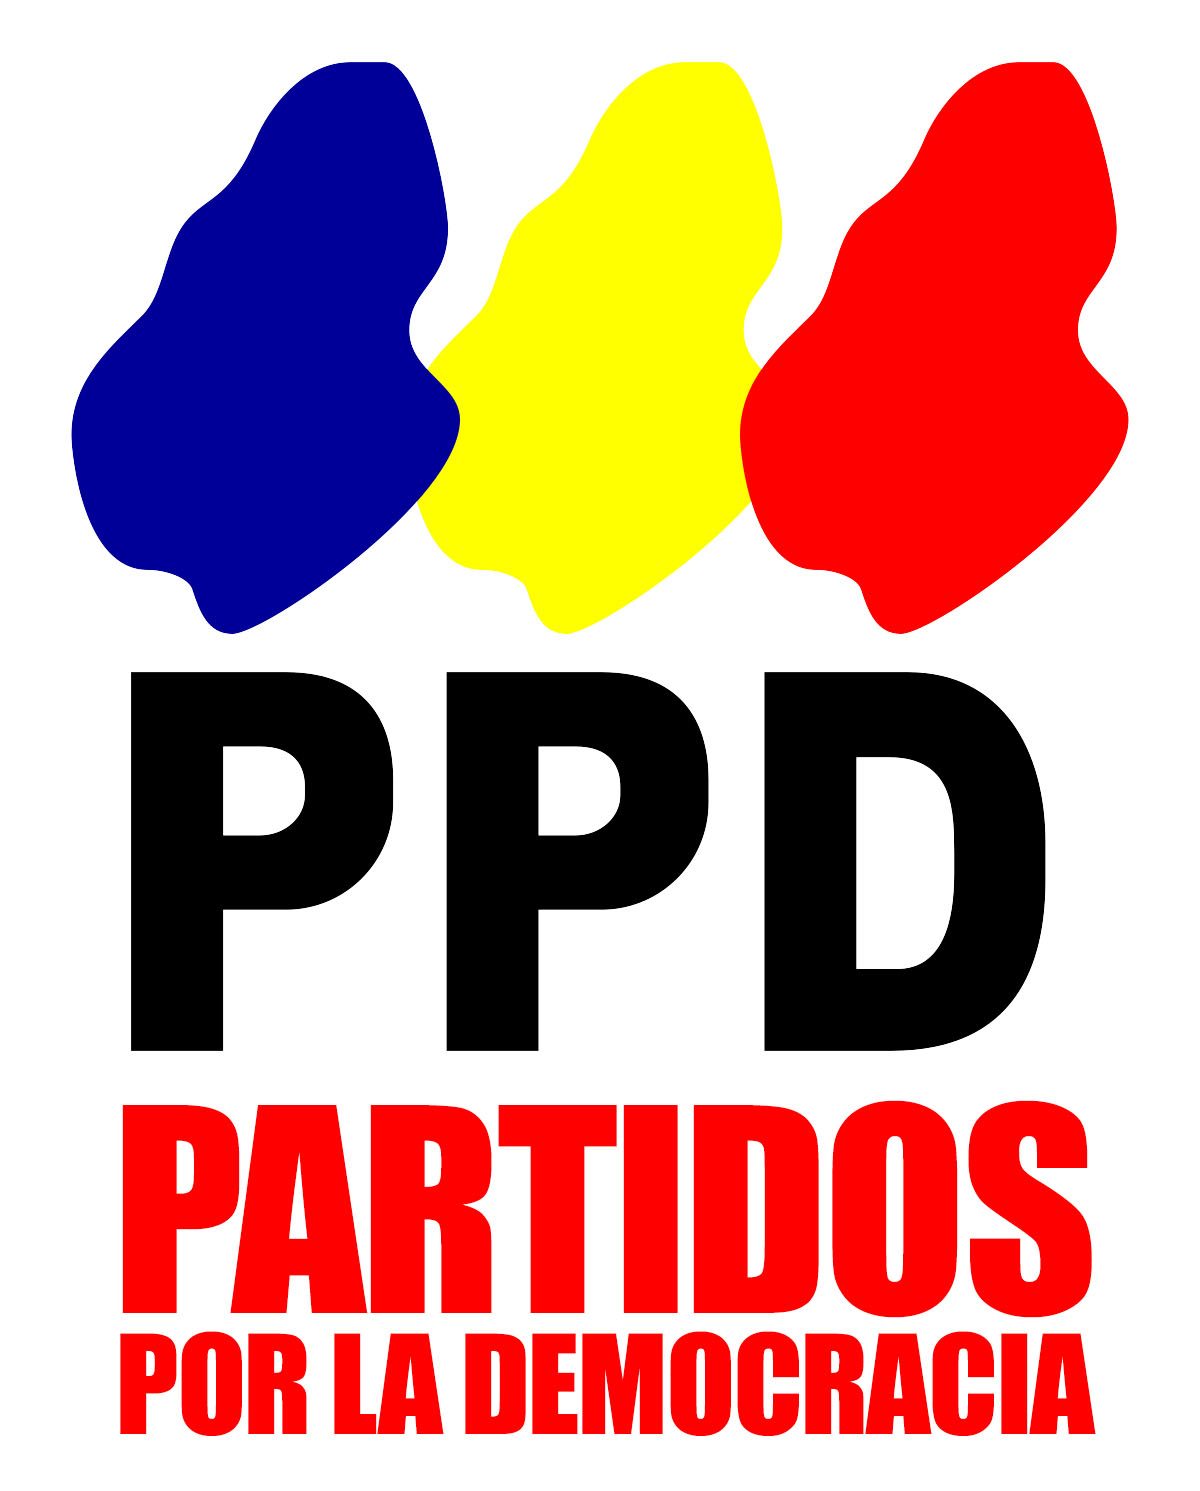 PPD Partidos por la Democracia